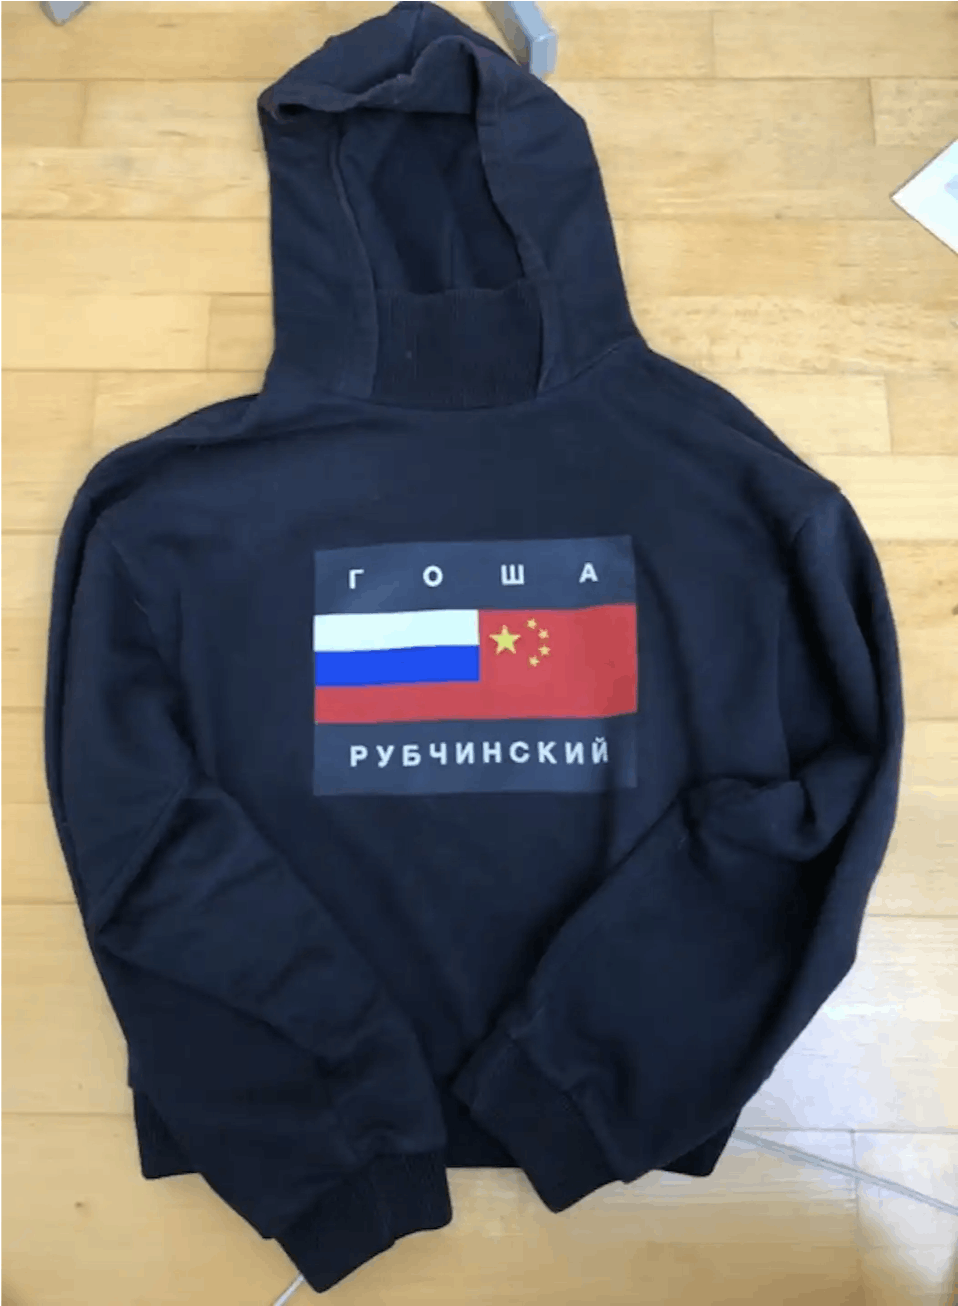 Gosha Rubchinskiy Gosha Rubchinskiy Flag Hoodie | Grailed